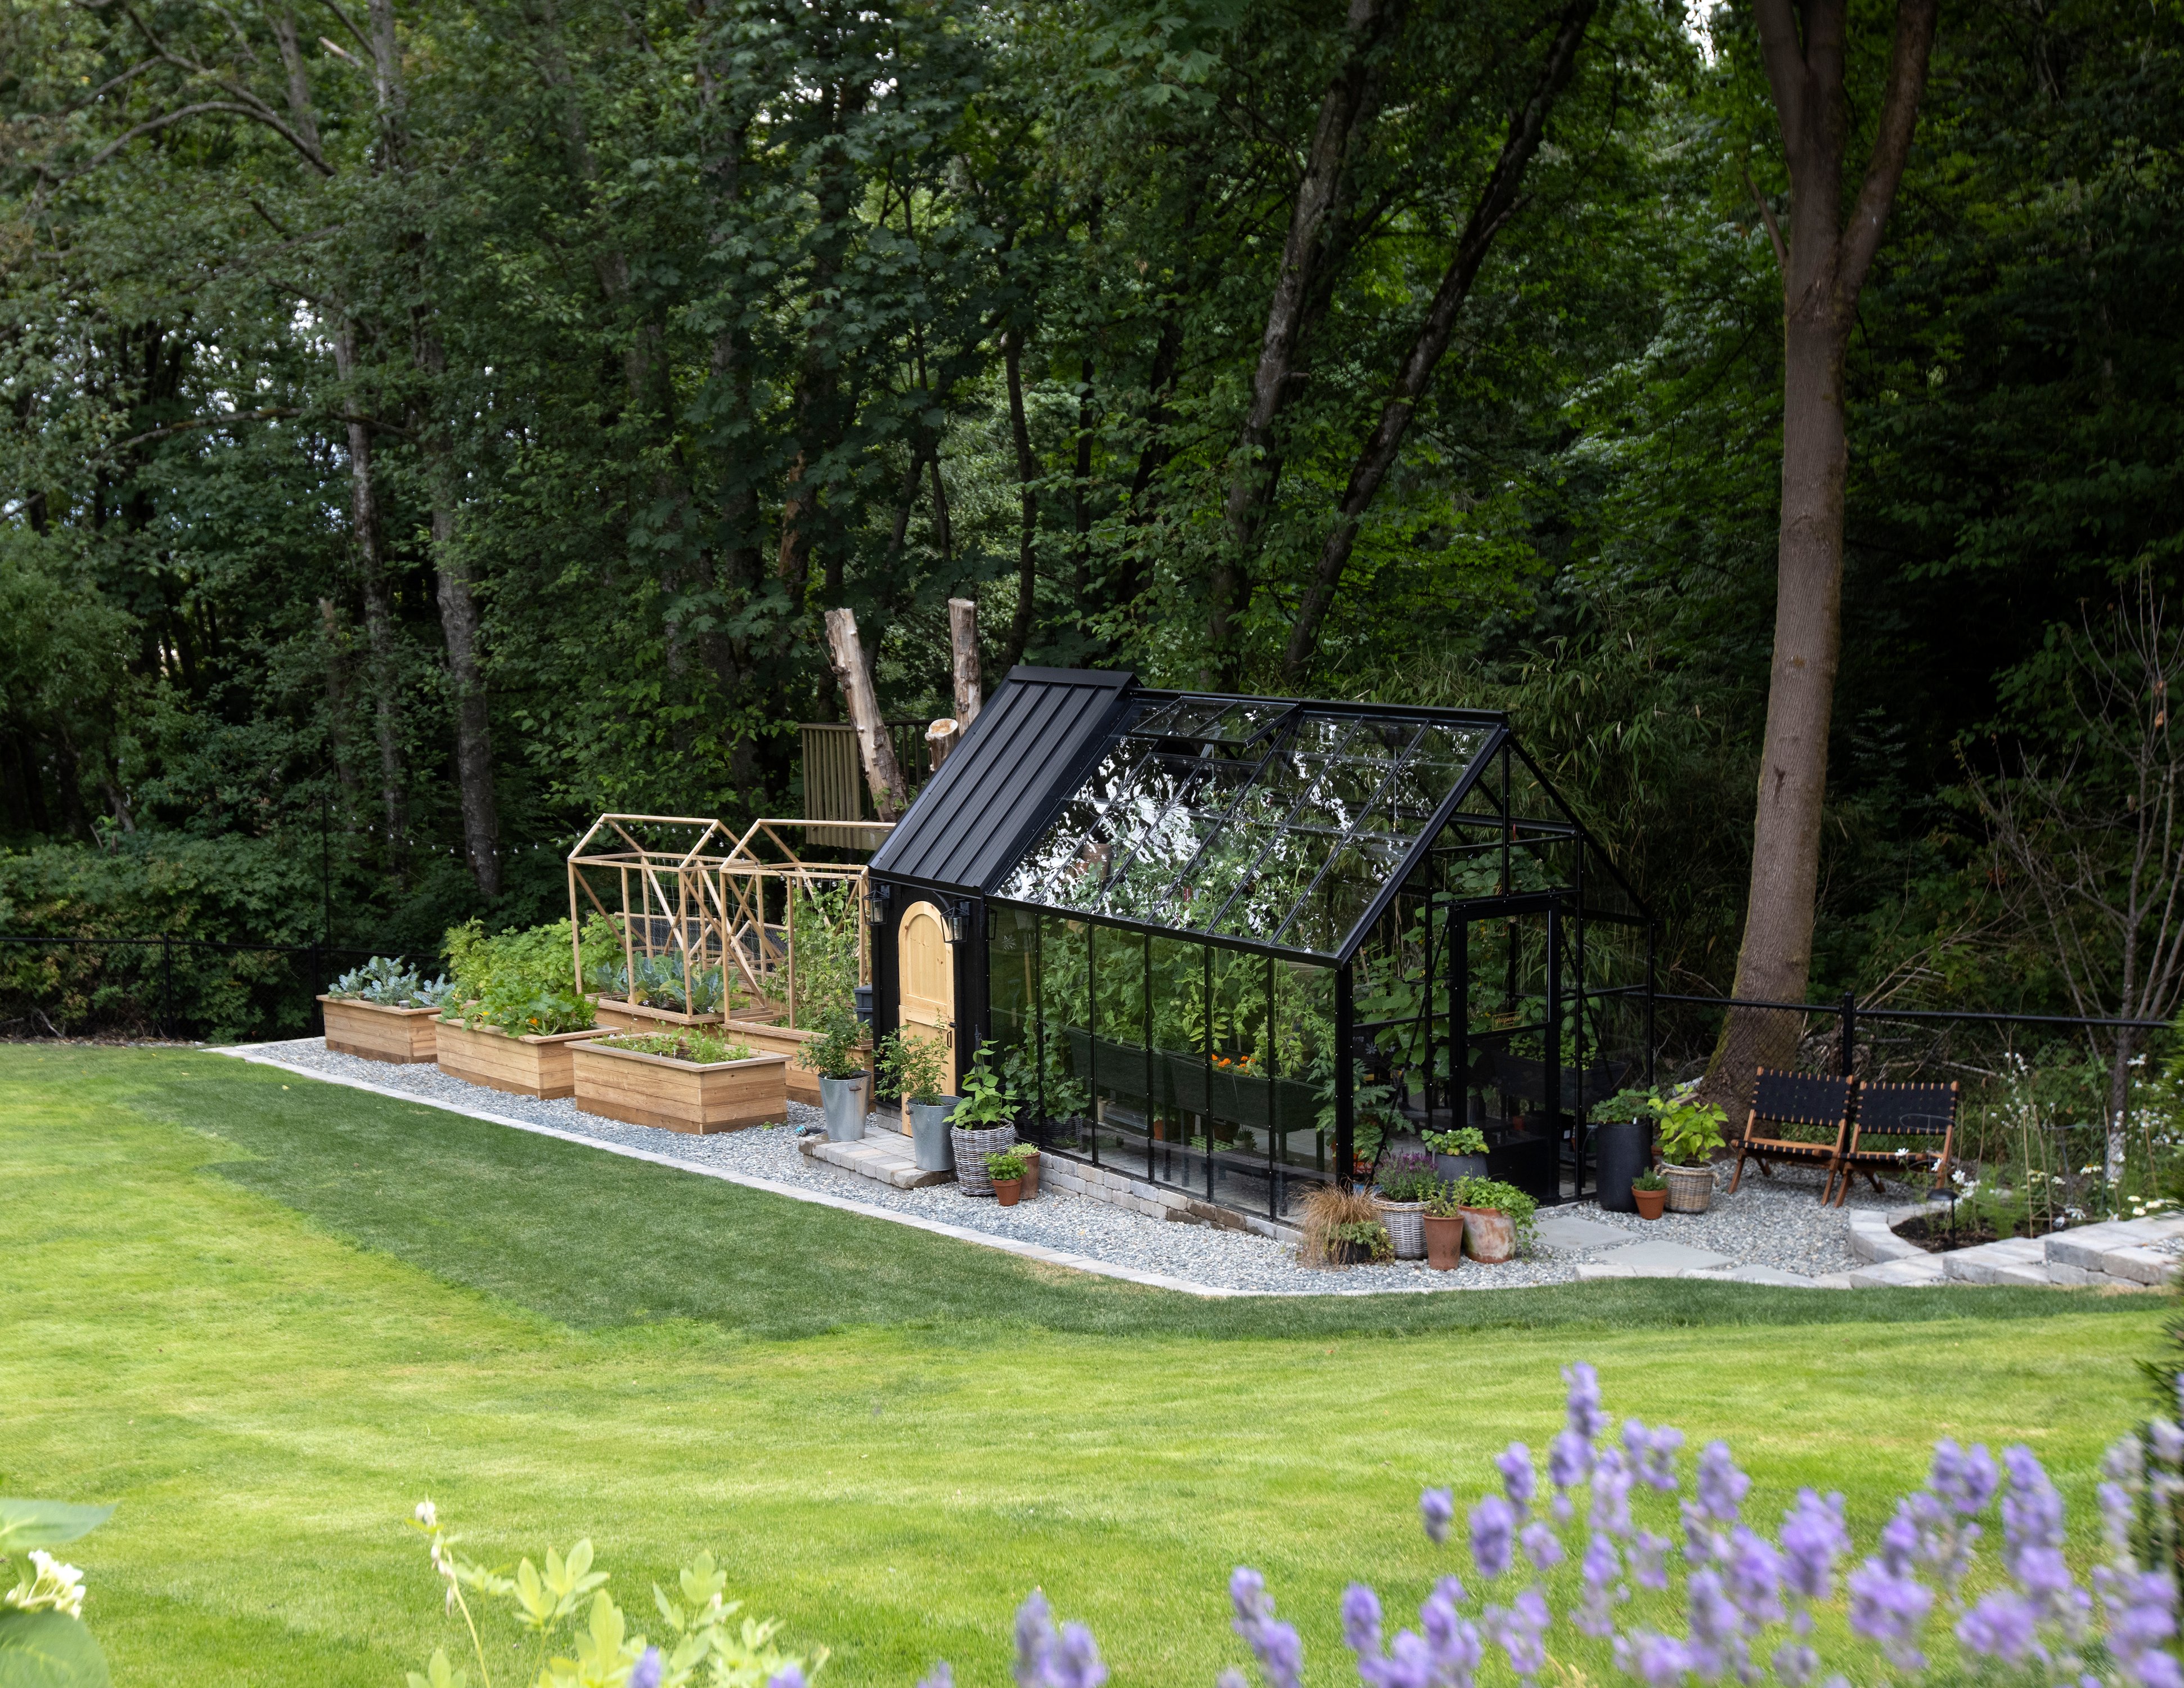 Black greenhouse attached to chicken coop in garden